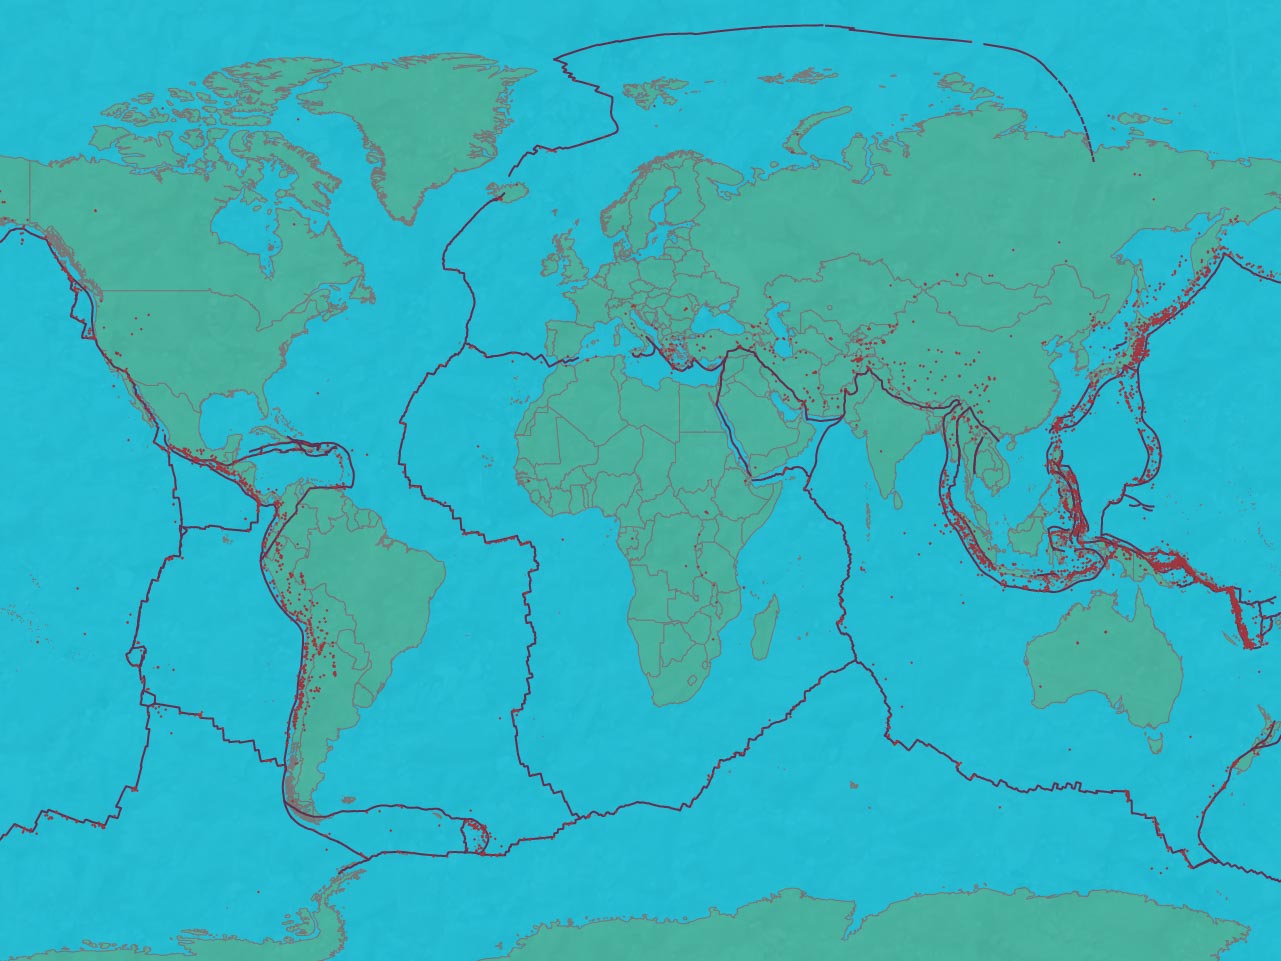 Earthquake and plate tectonics map